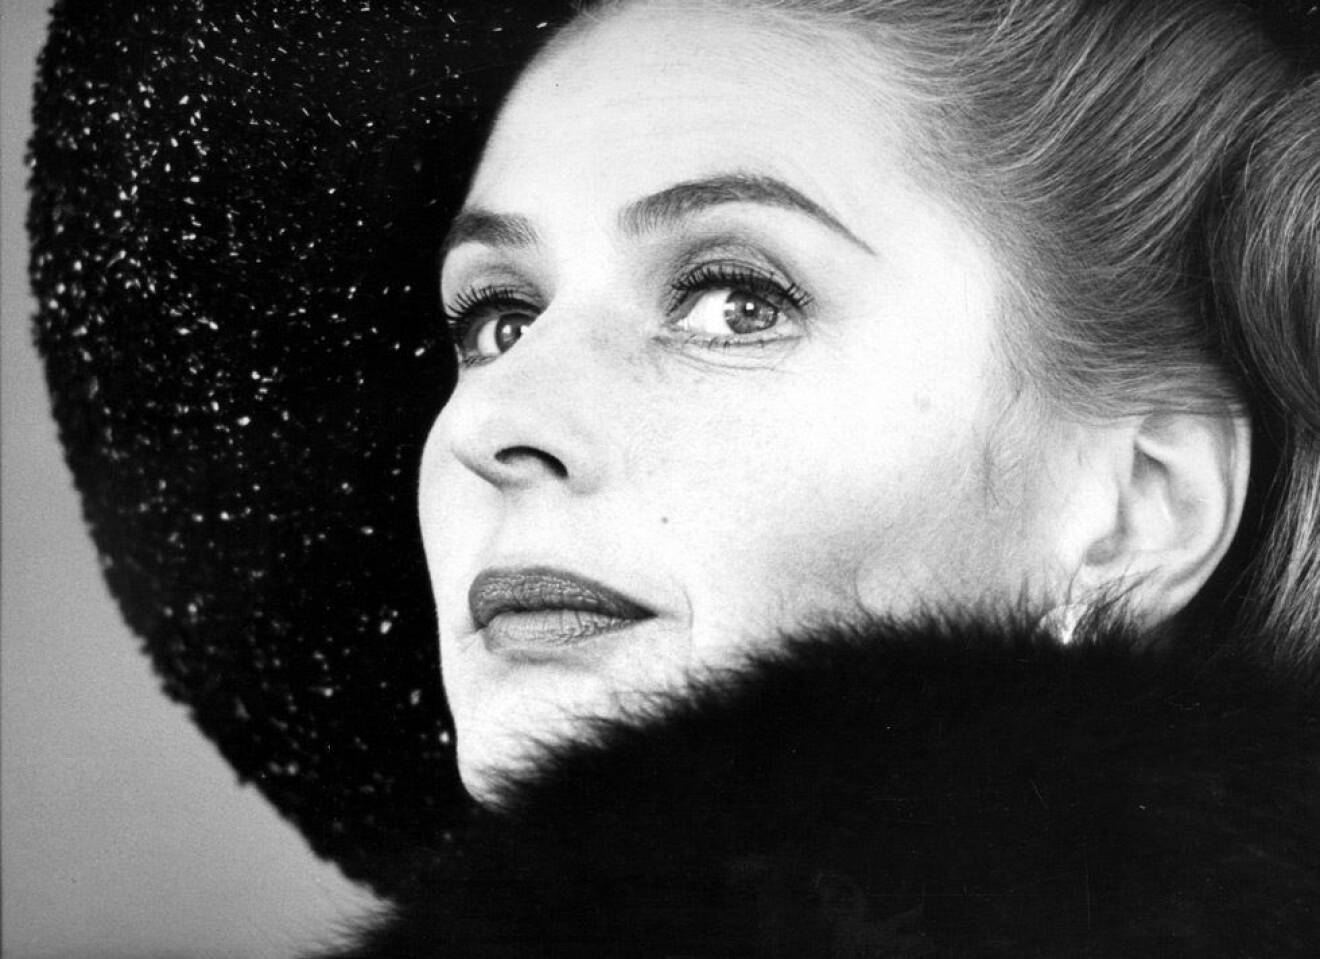 Ingrid Bergman svensk ikon